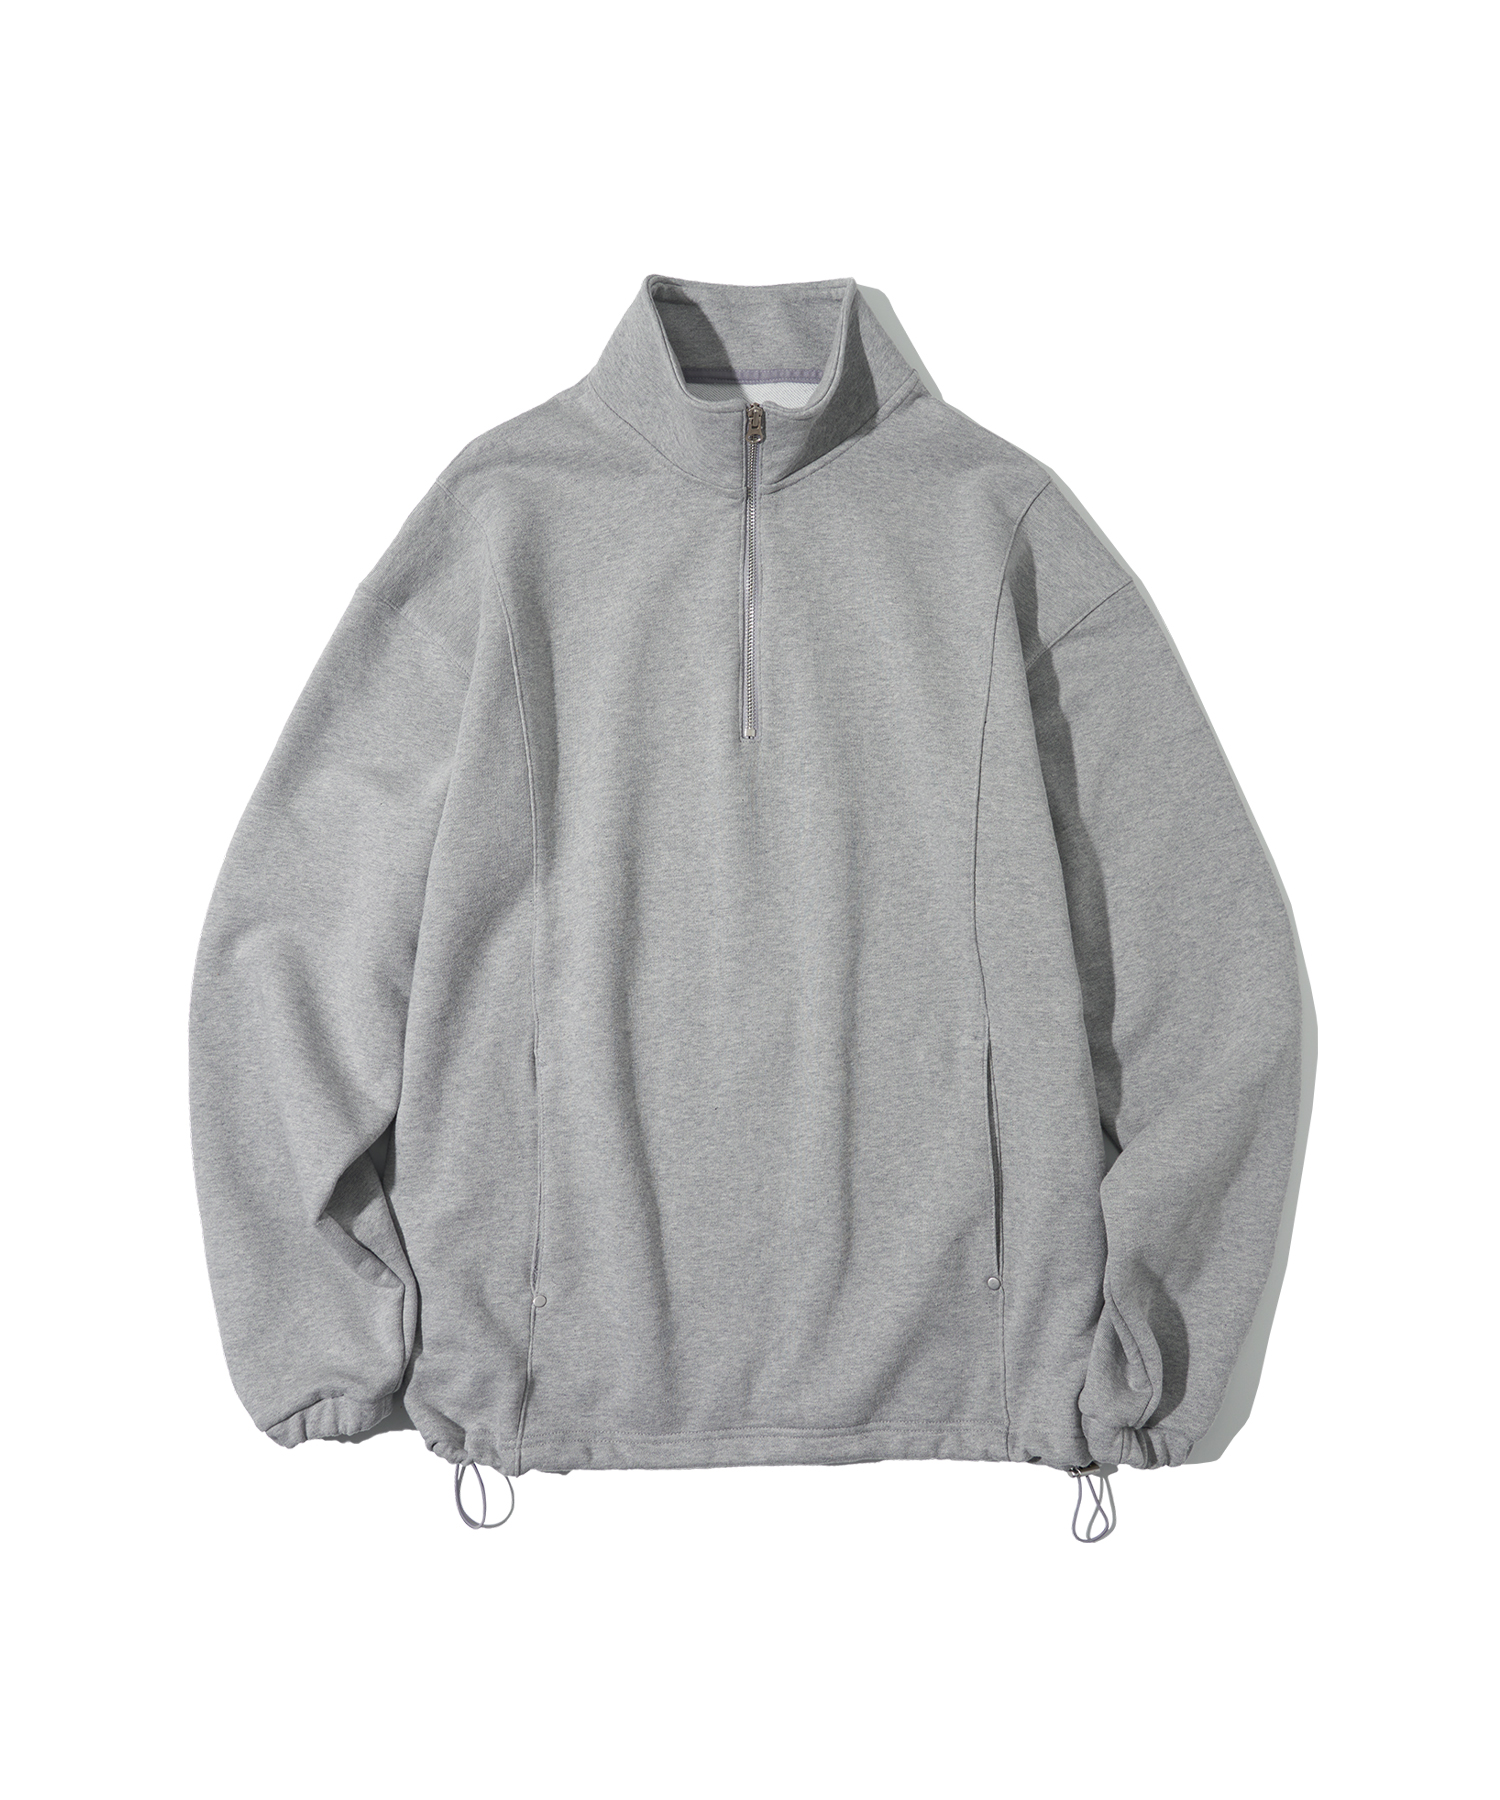 T20001 Curved anorak sweatshirt_Gray